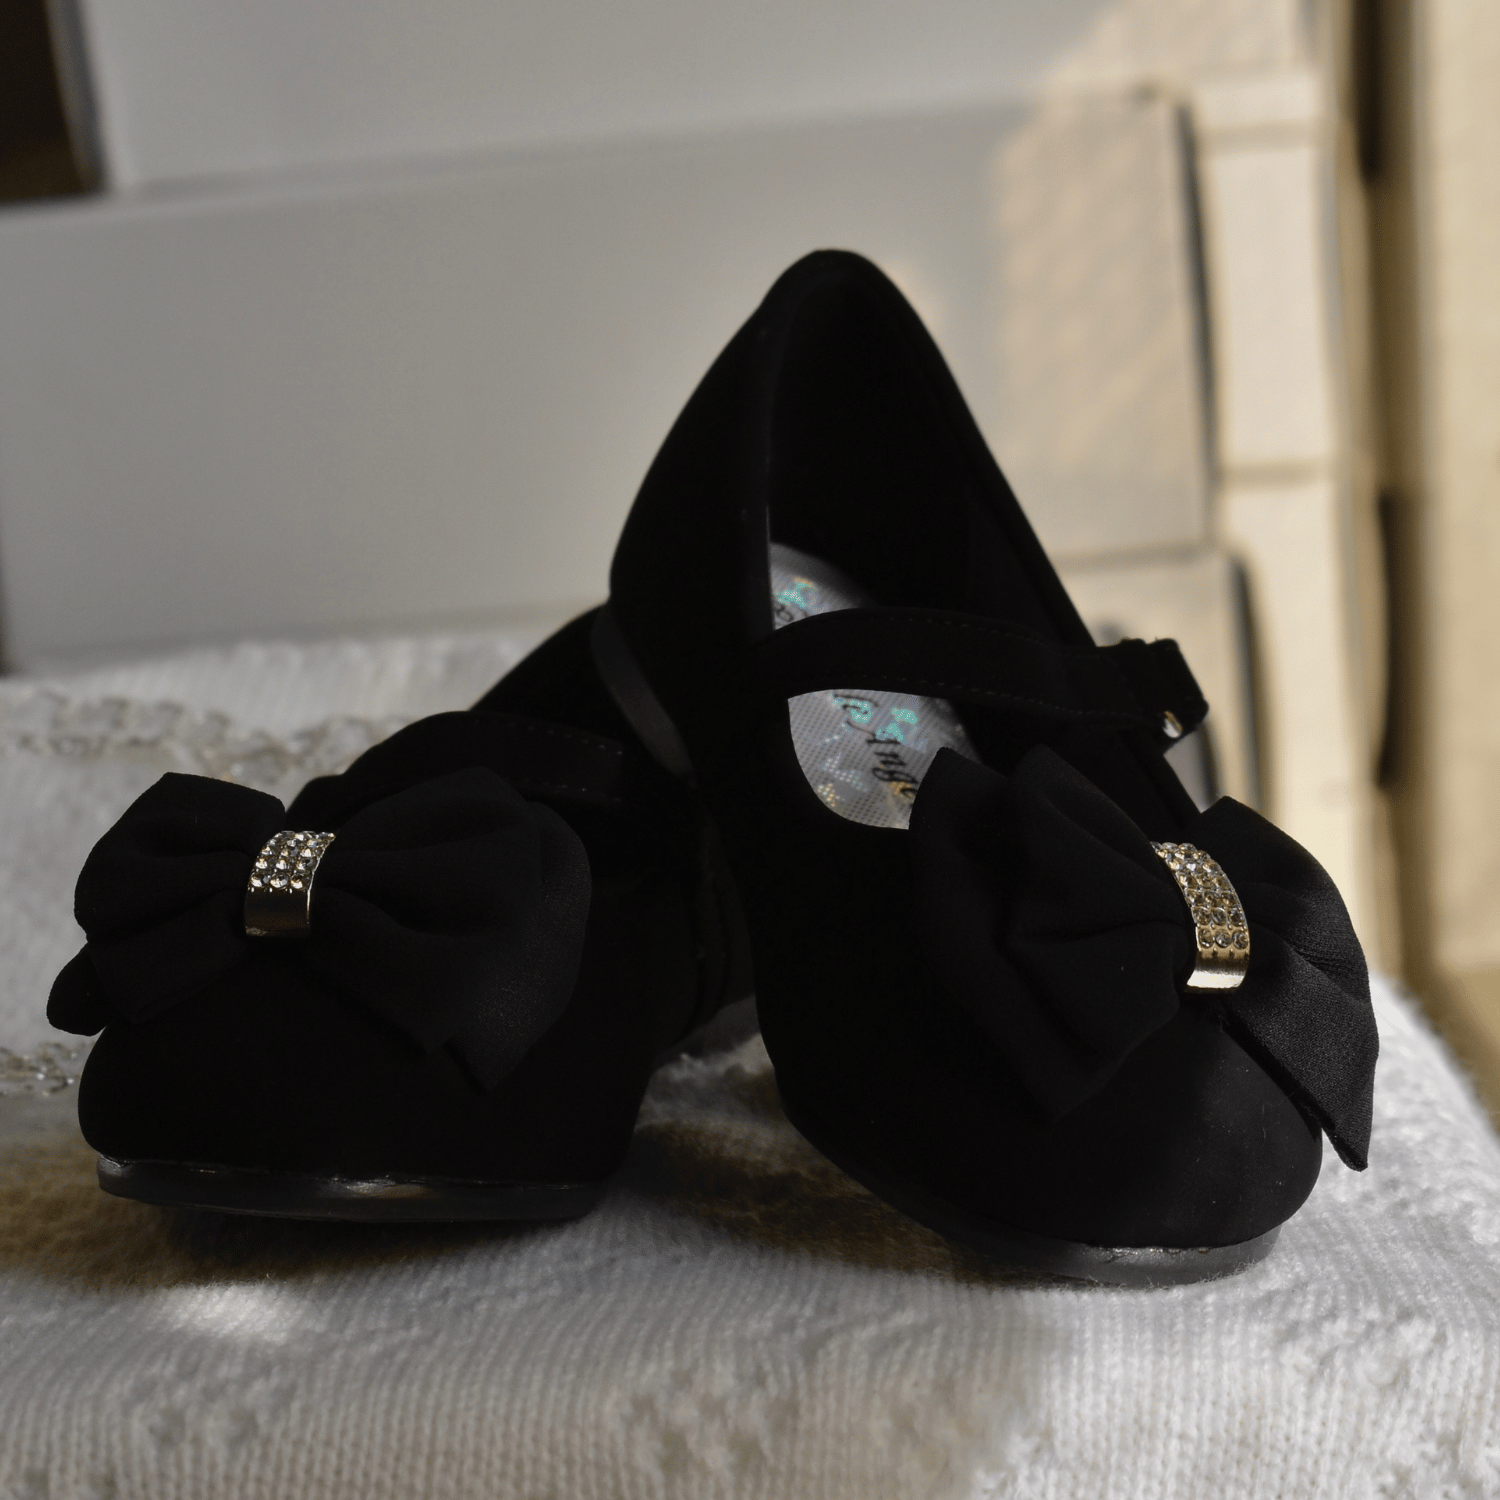 Britt's Ballerina Girls Formal Shoes